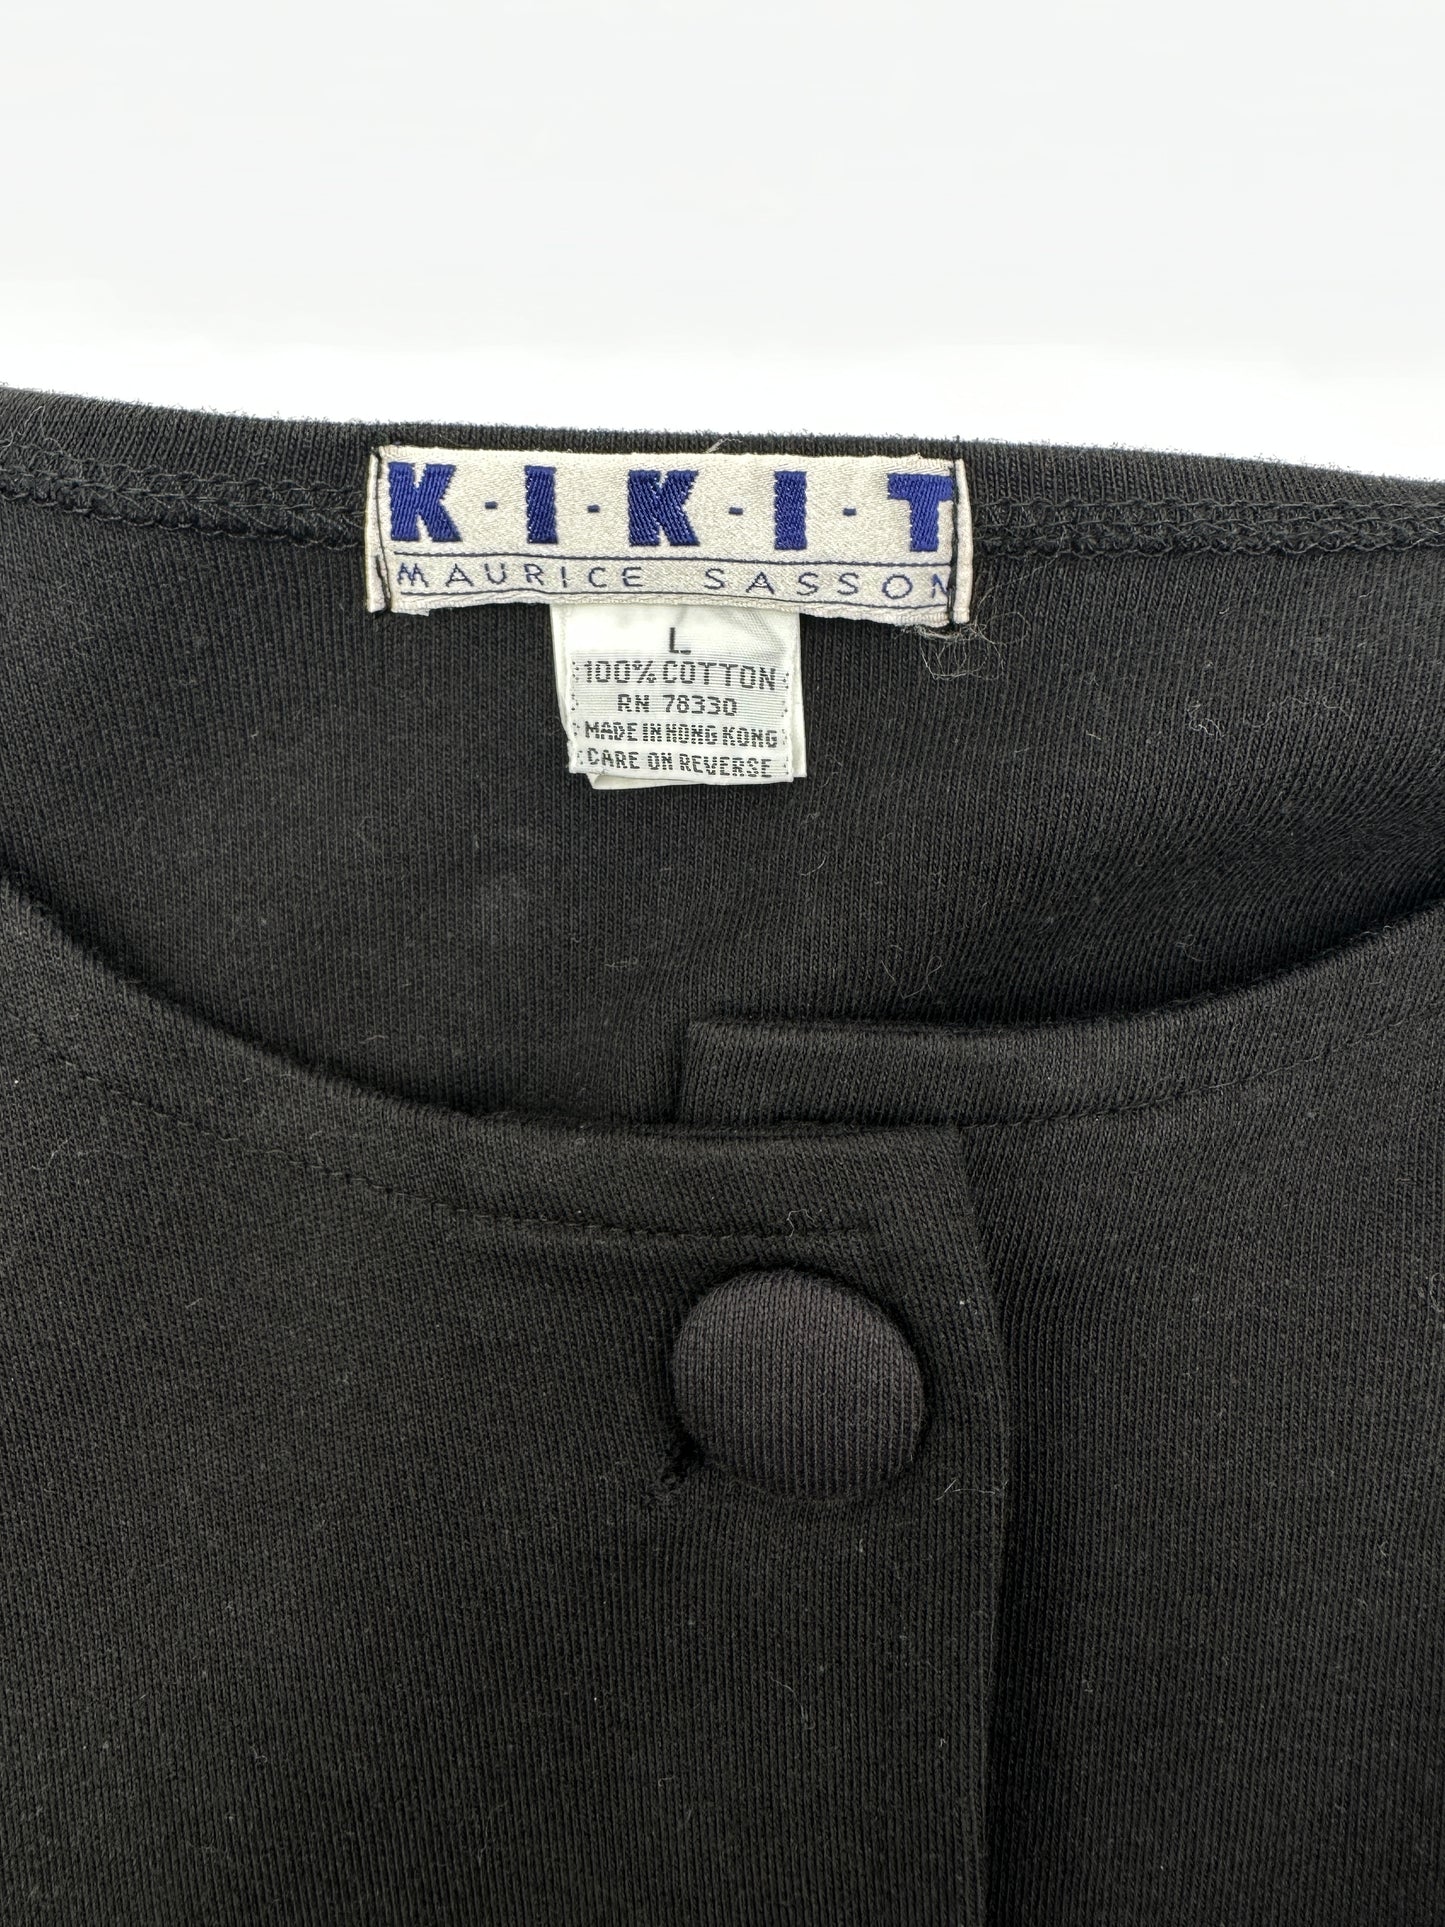 Kikit Maurice Sasson Size L Black Oversized Boxy Cardigan Jacket